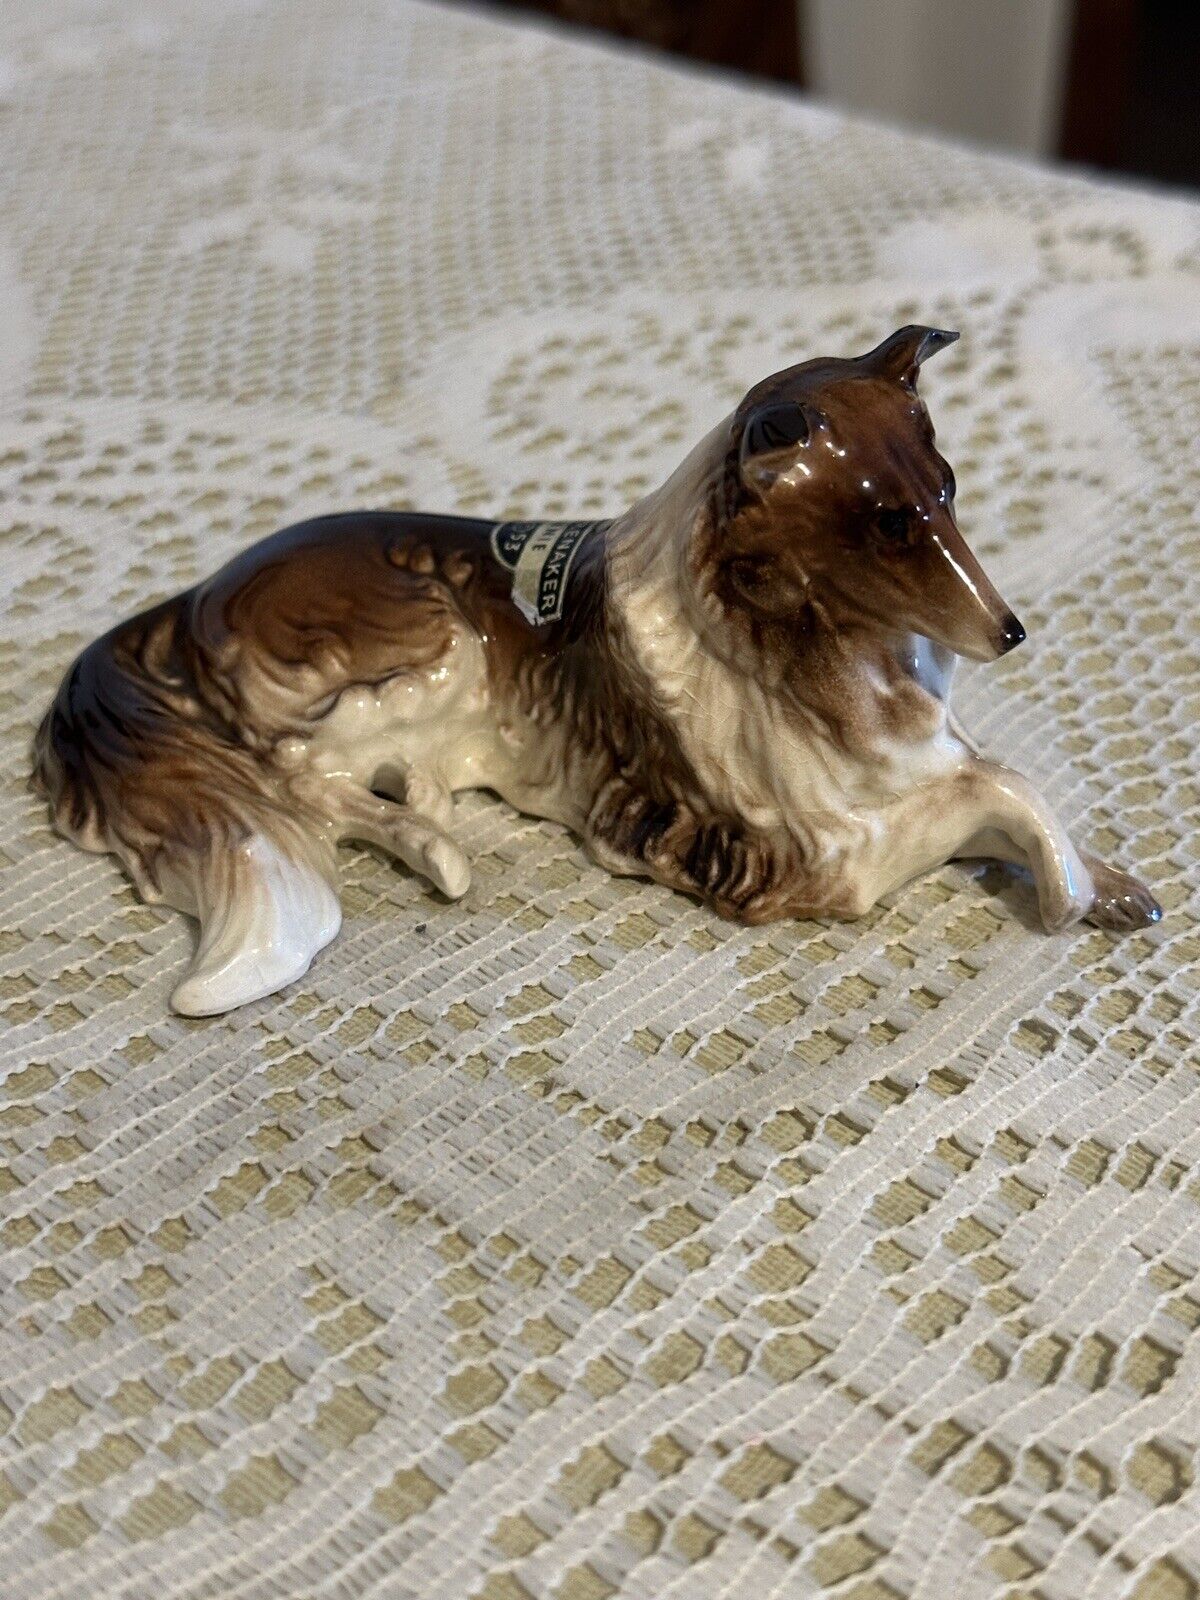 Vtg Hagen Renaker Collie Dog Figurine BONNIE 1953 Label Glossy Dog Figurine 4”